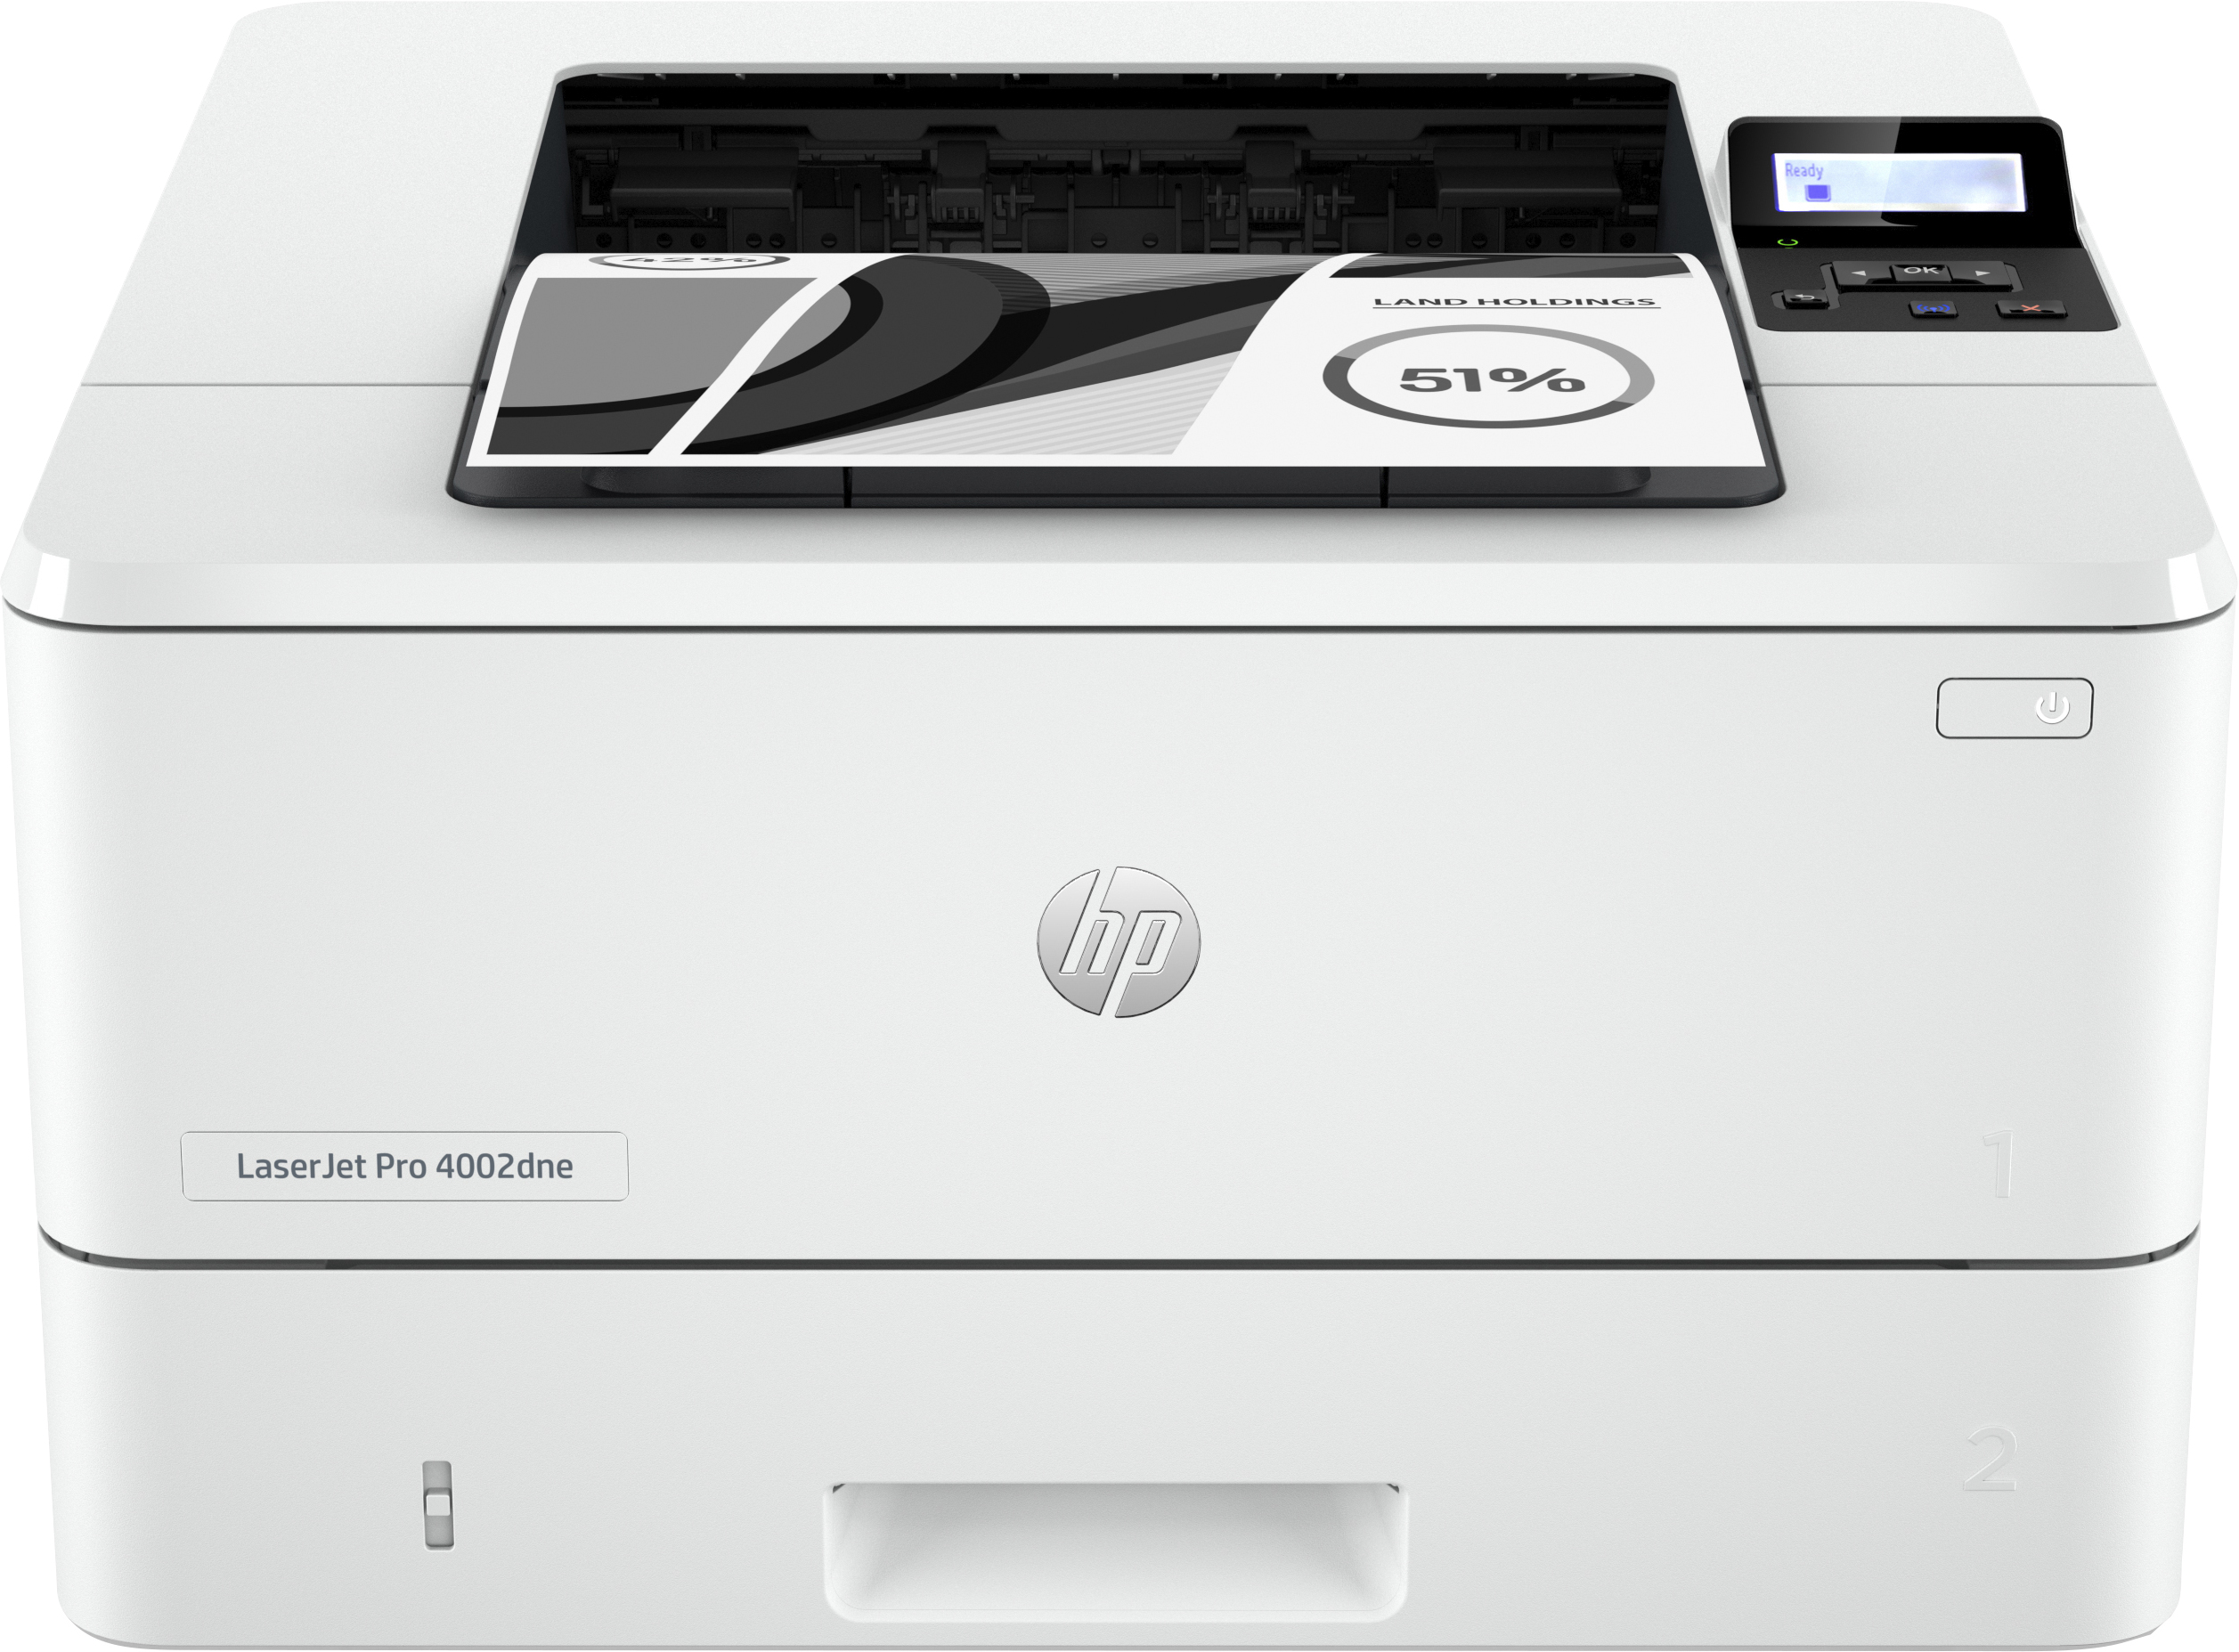 HP LaserJet Pro Stampante HP 4002dne, Bianco e nero, Stampante per Piccole e medie imprese, Stampa, HP+; idonea per HP Instant Ink; stampa da smartphone o tablet; stampa fronte/retro